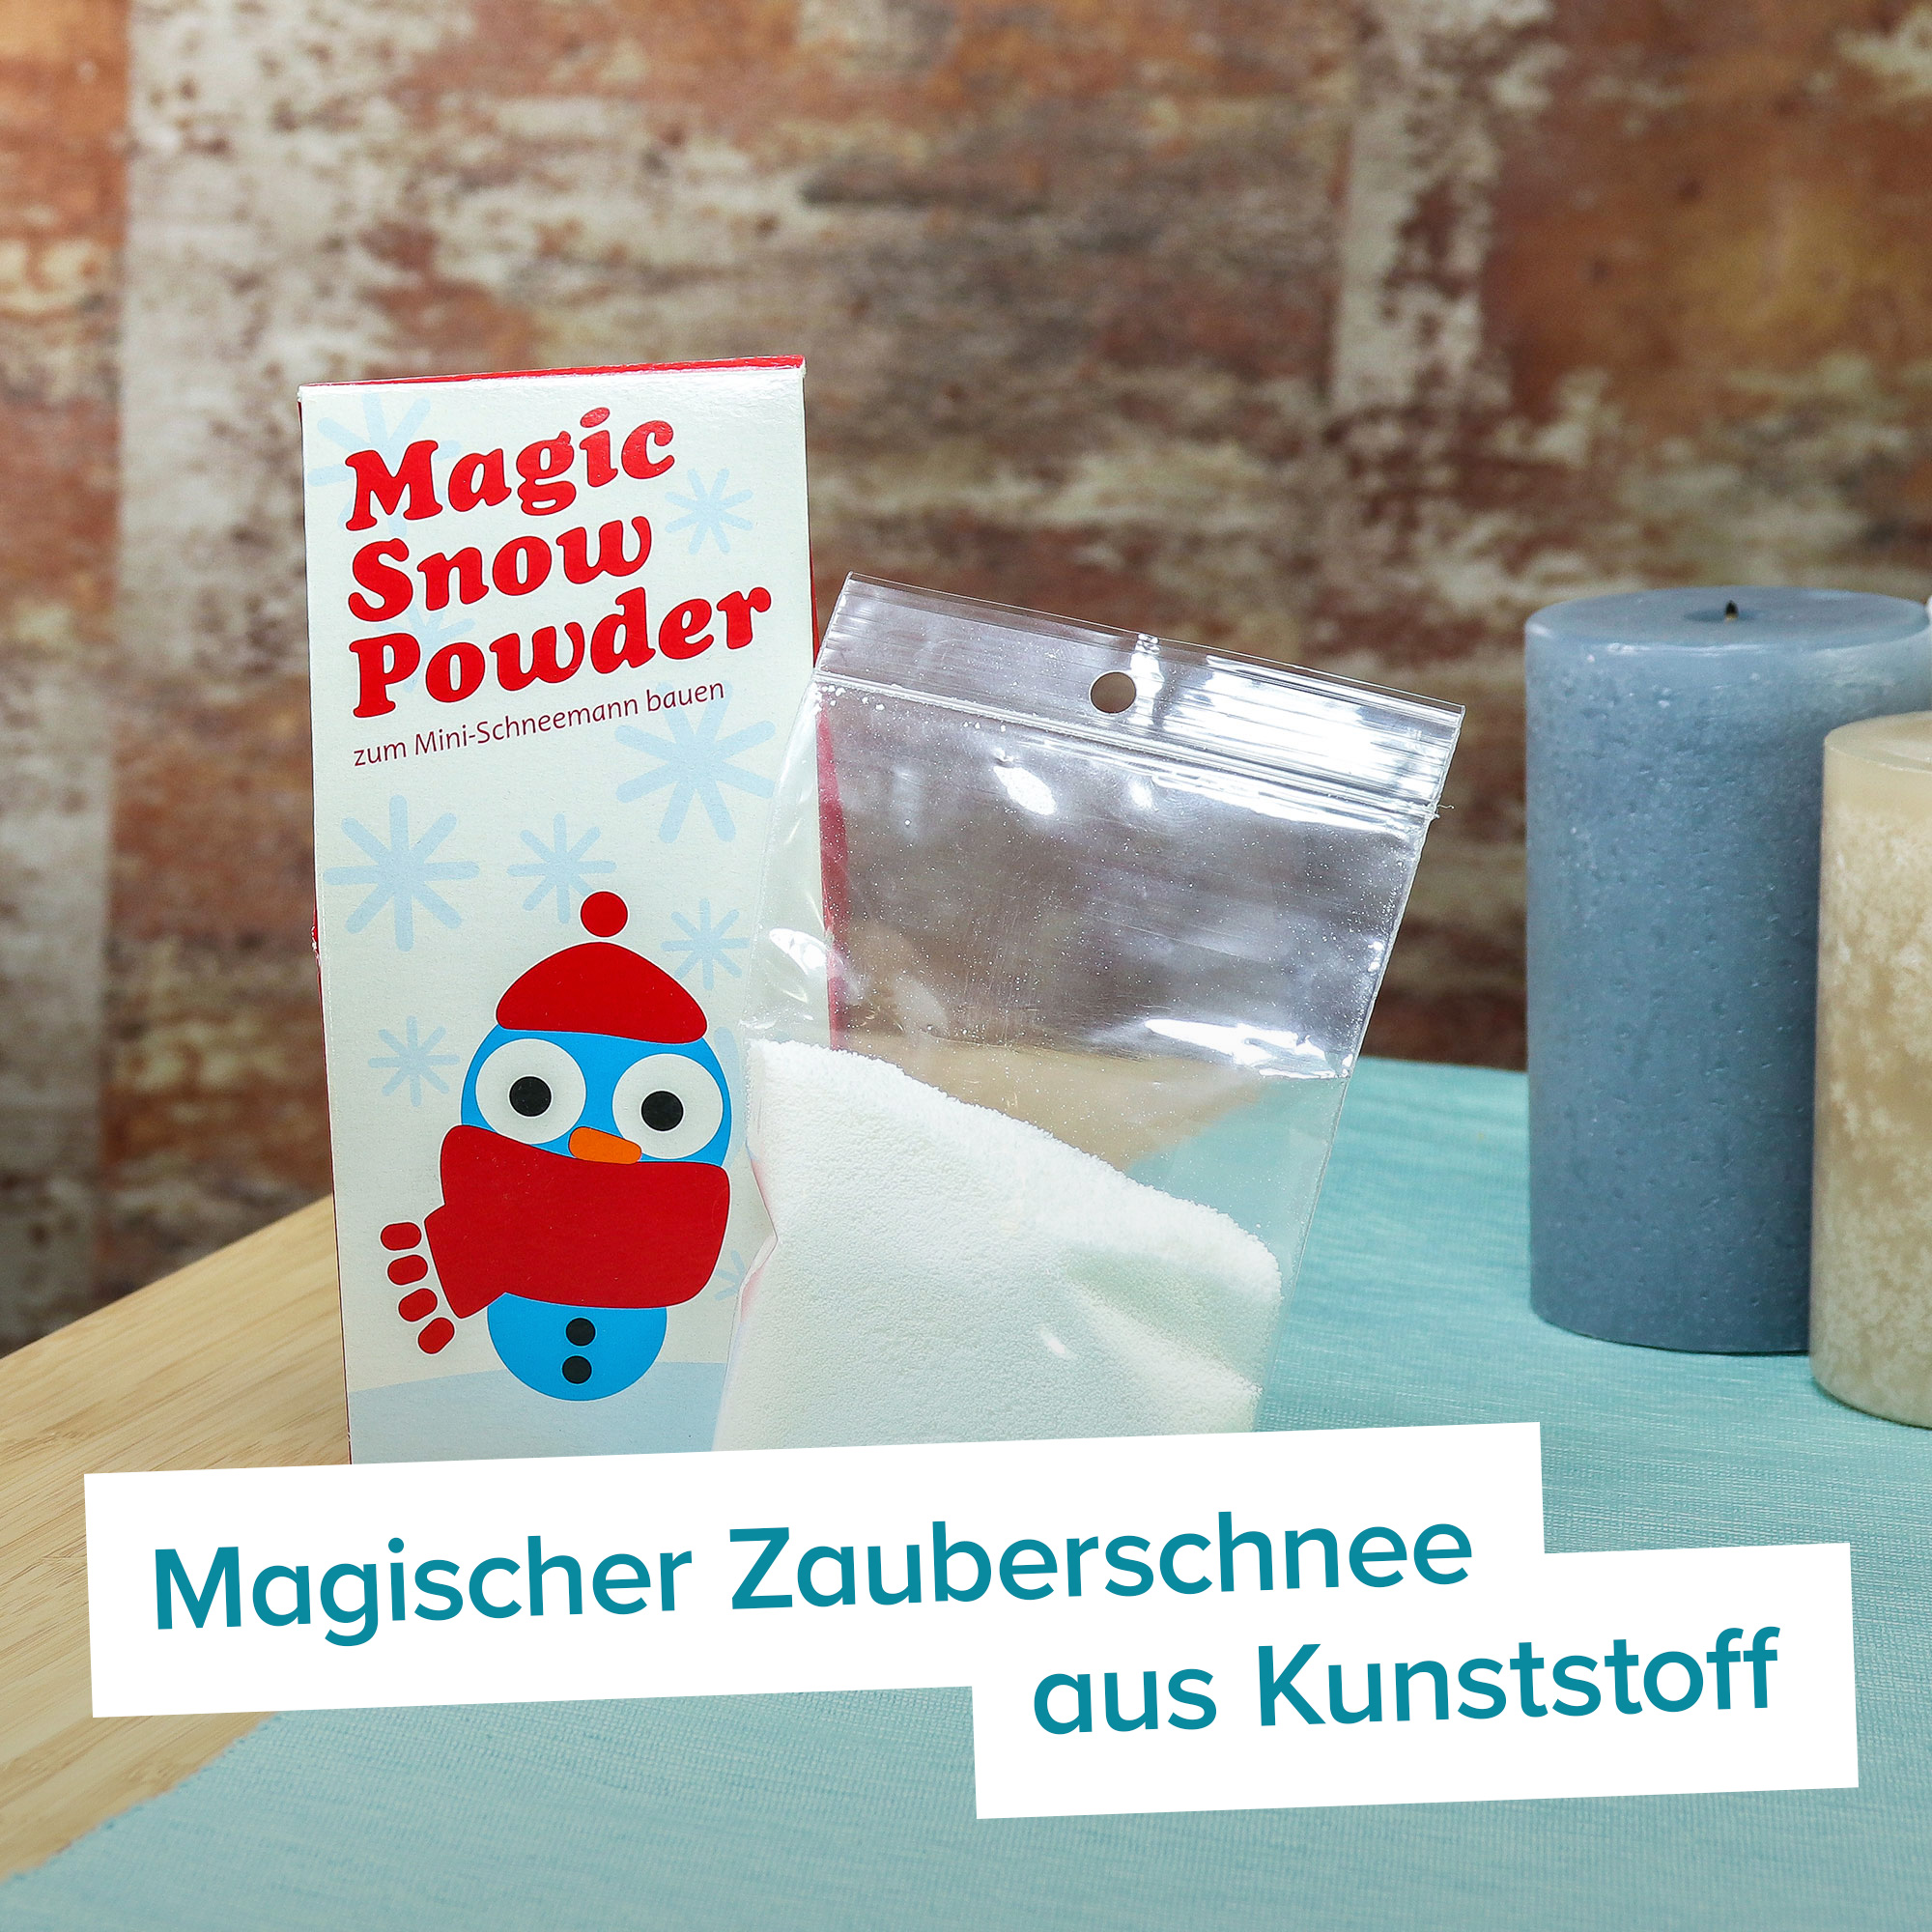 Zauberschnee - Magisches Pulver für Kunstschnee 4032 - 9